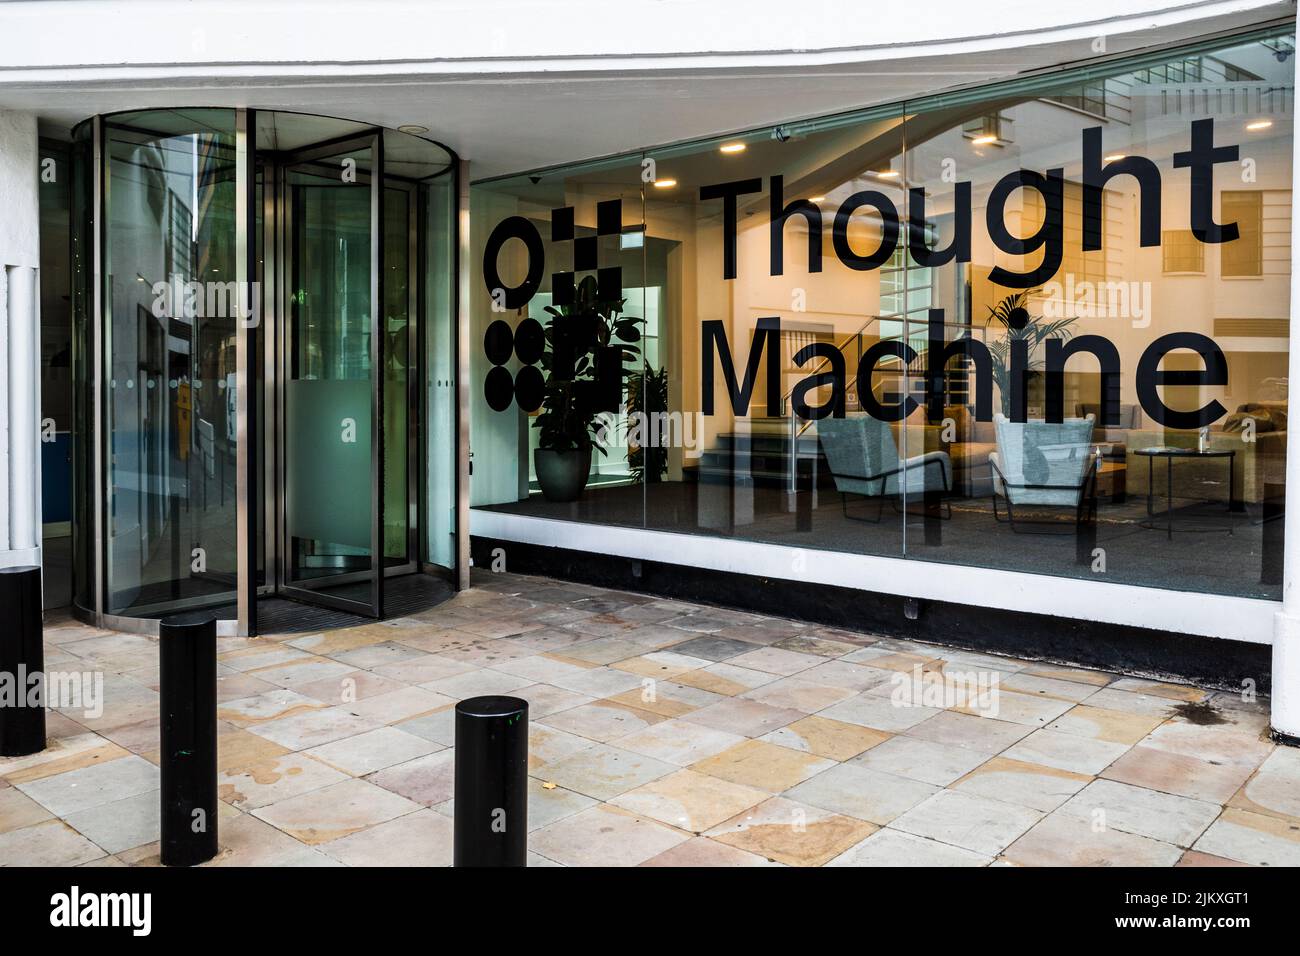 Sede central de Thought Machine London Herbrand St - Thought Machine es una empresa de fintech que crea plataformas basadas en la nube para la industria bancaria. Fundada 2014. Foto de stock